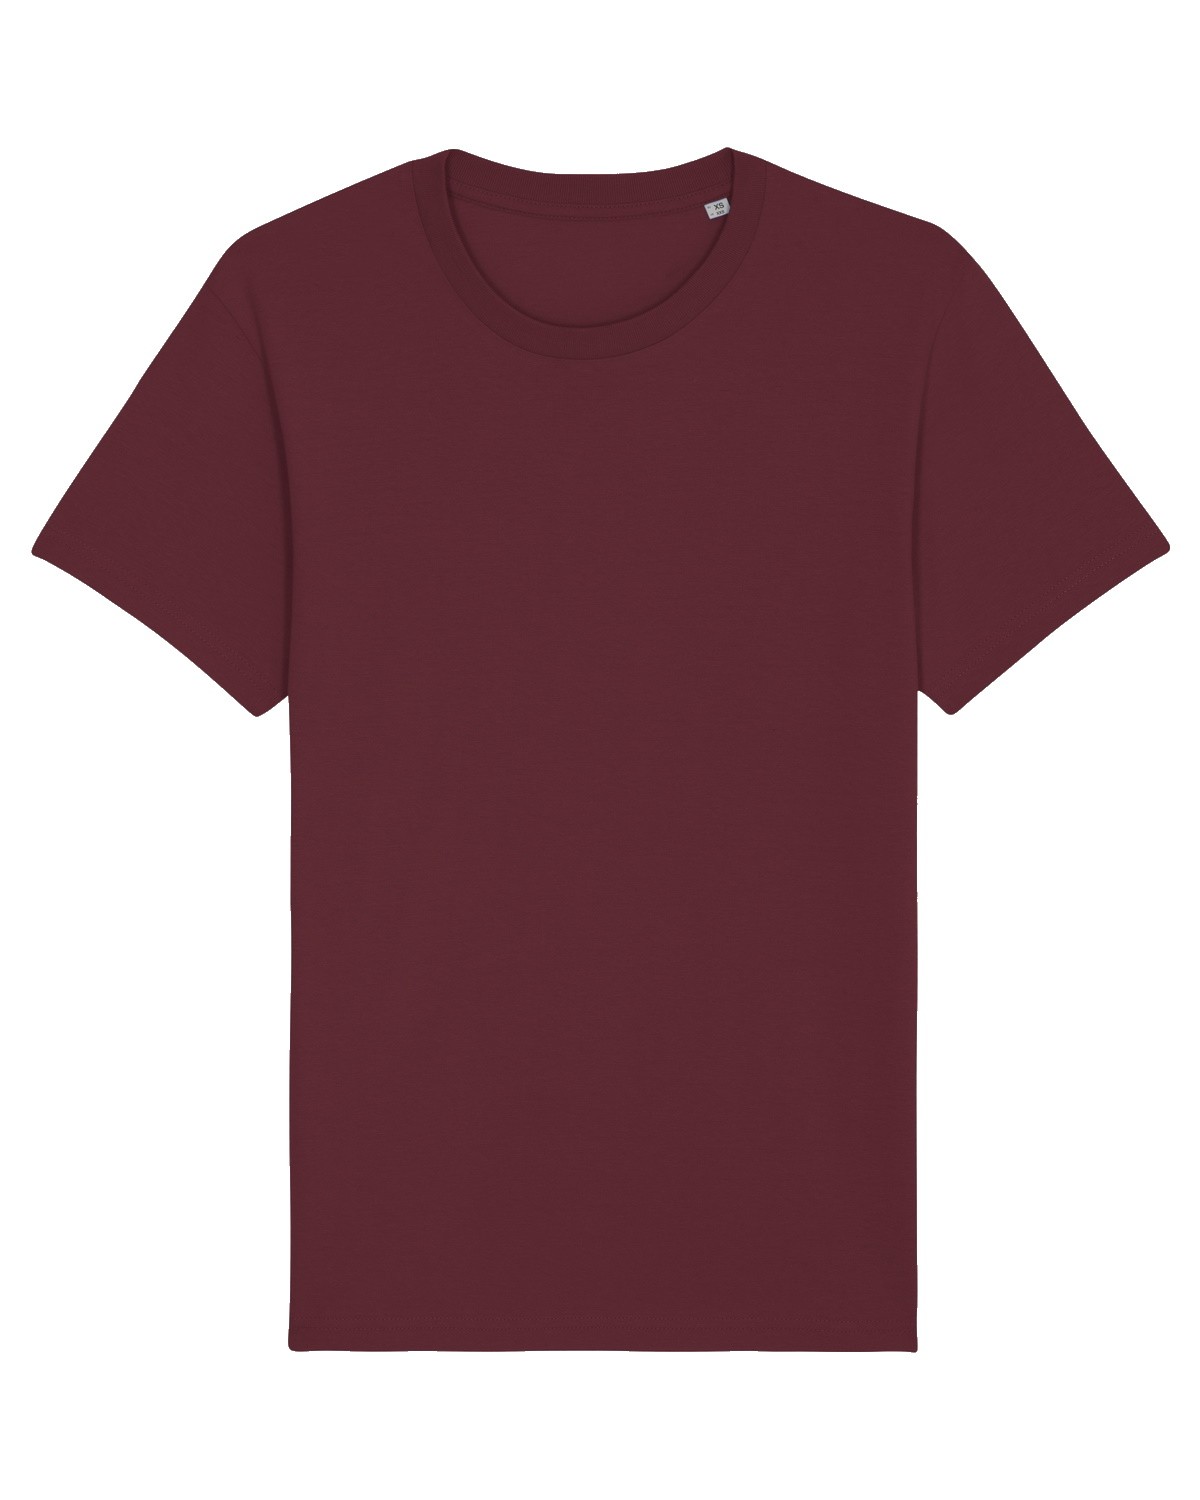 rosado evitar parásito Camiseta Personalizada Hombre - Color Burdeos - Camisetas The Origen